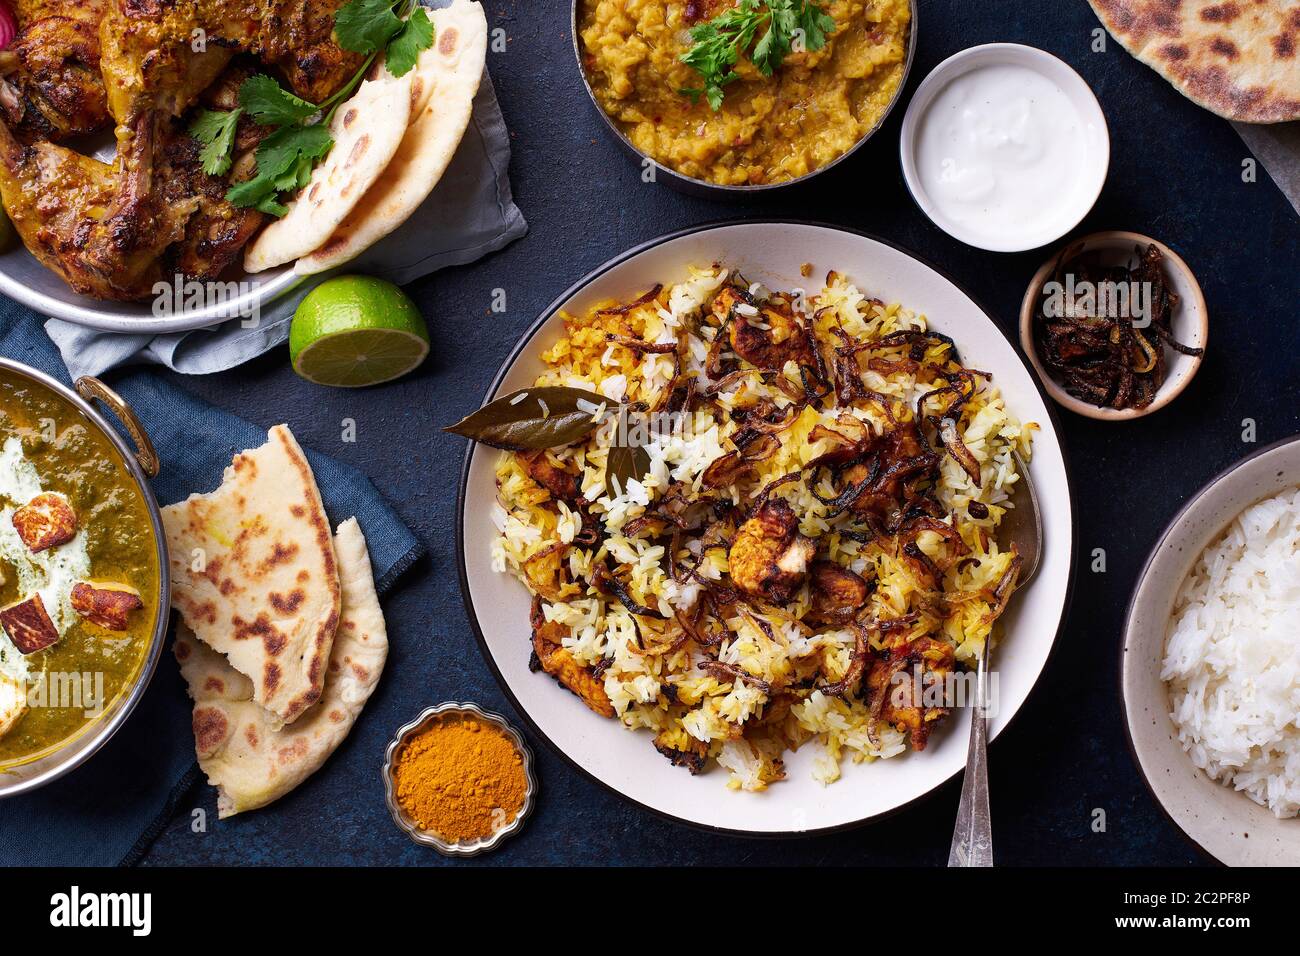 Cena di cucina indiana: Pollo tandoori, biryani, lenticchie rosse con riso naan, paneer di palak e riso basmati su fondo di cemento scuro Foto Stock